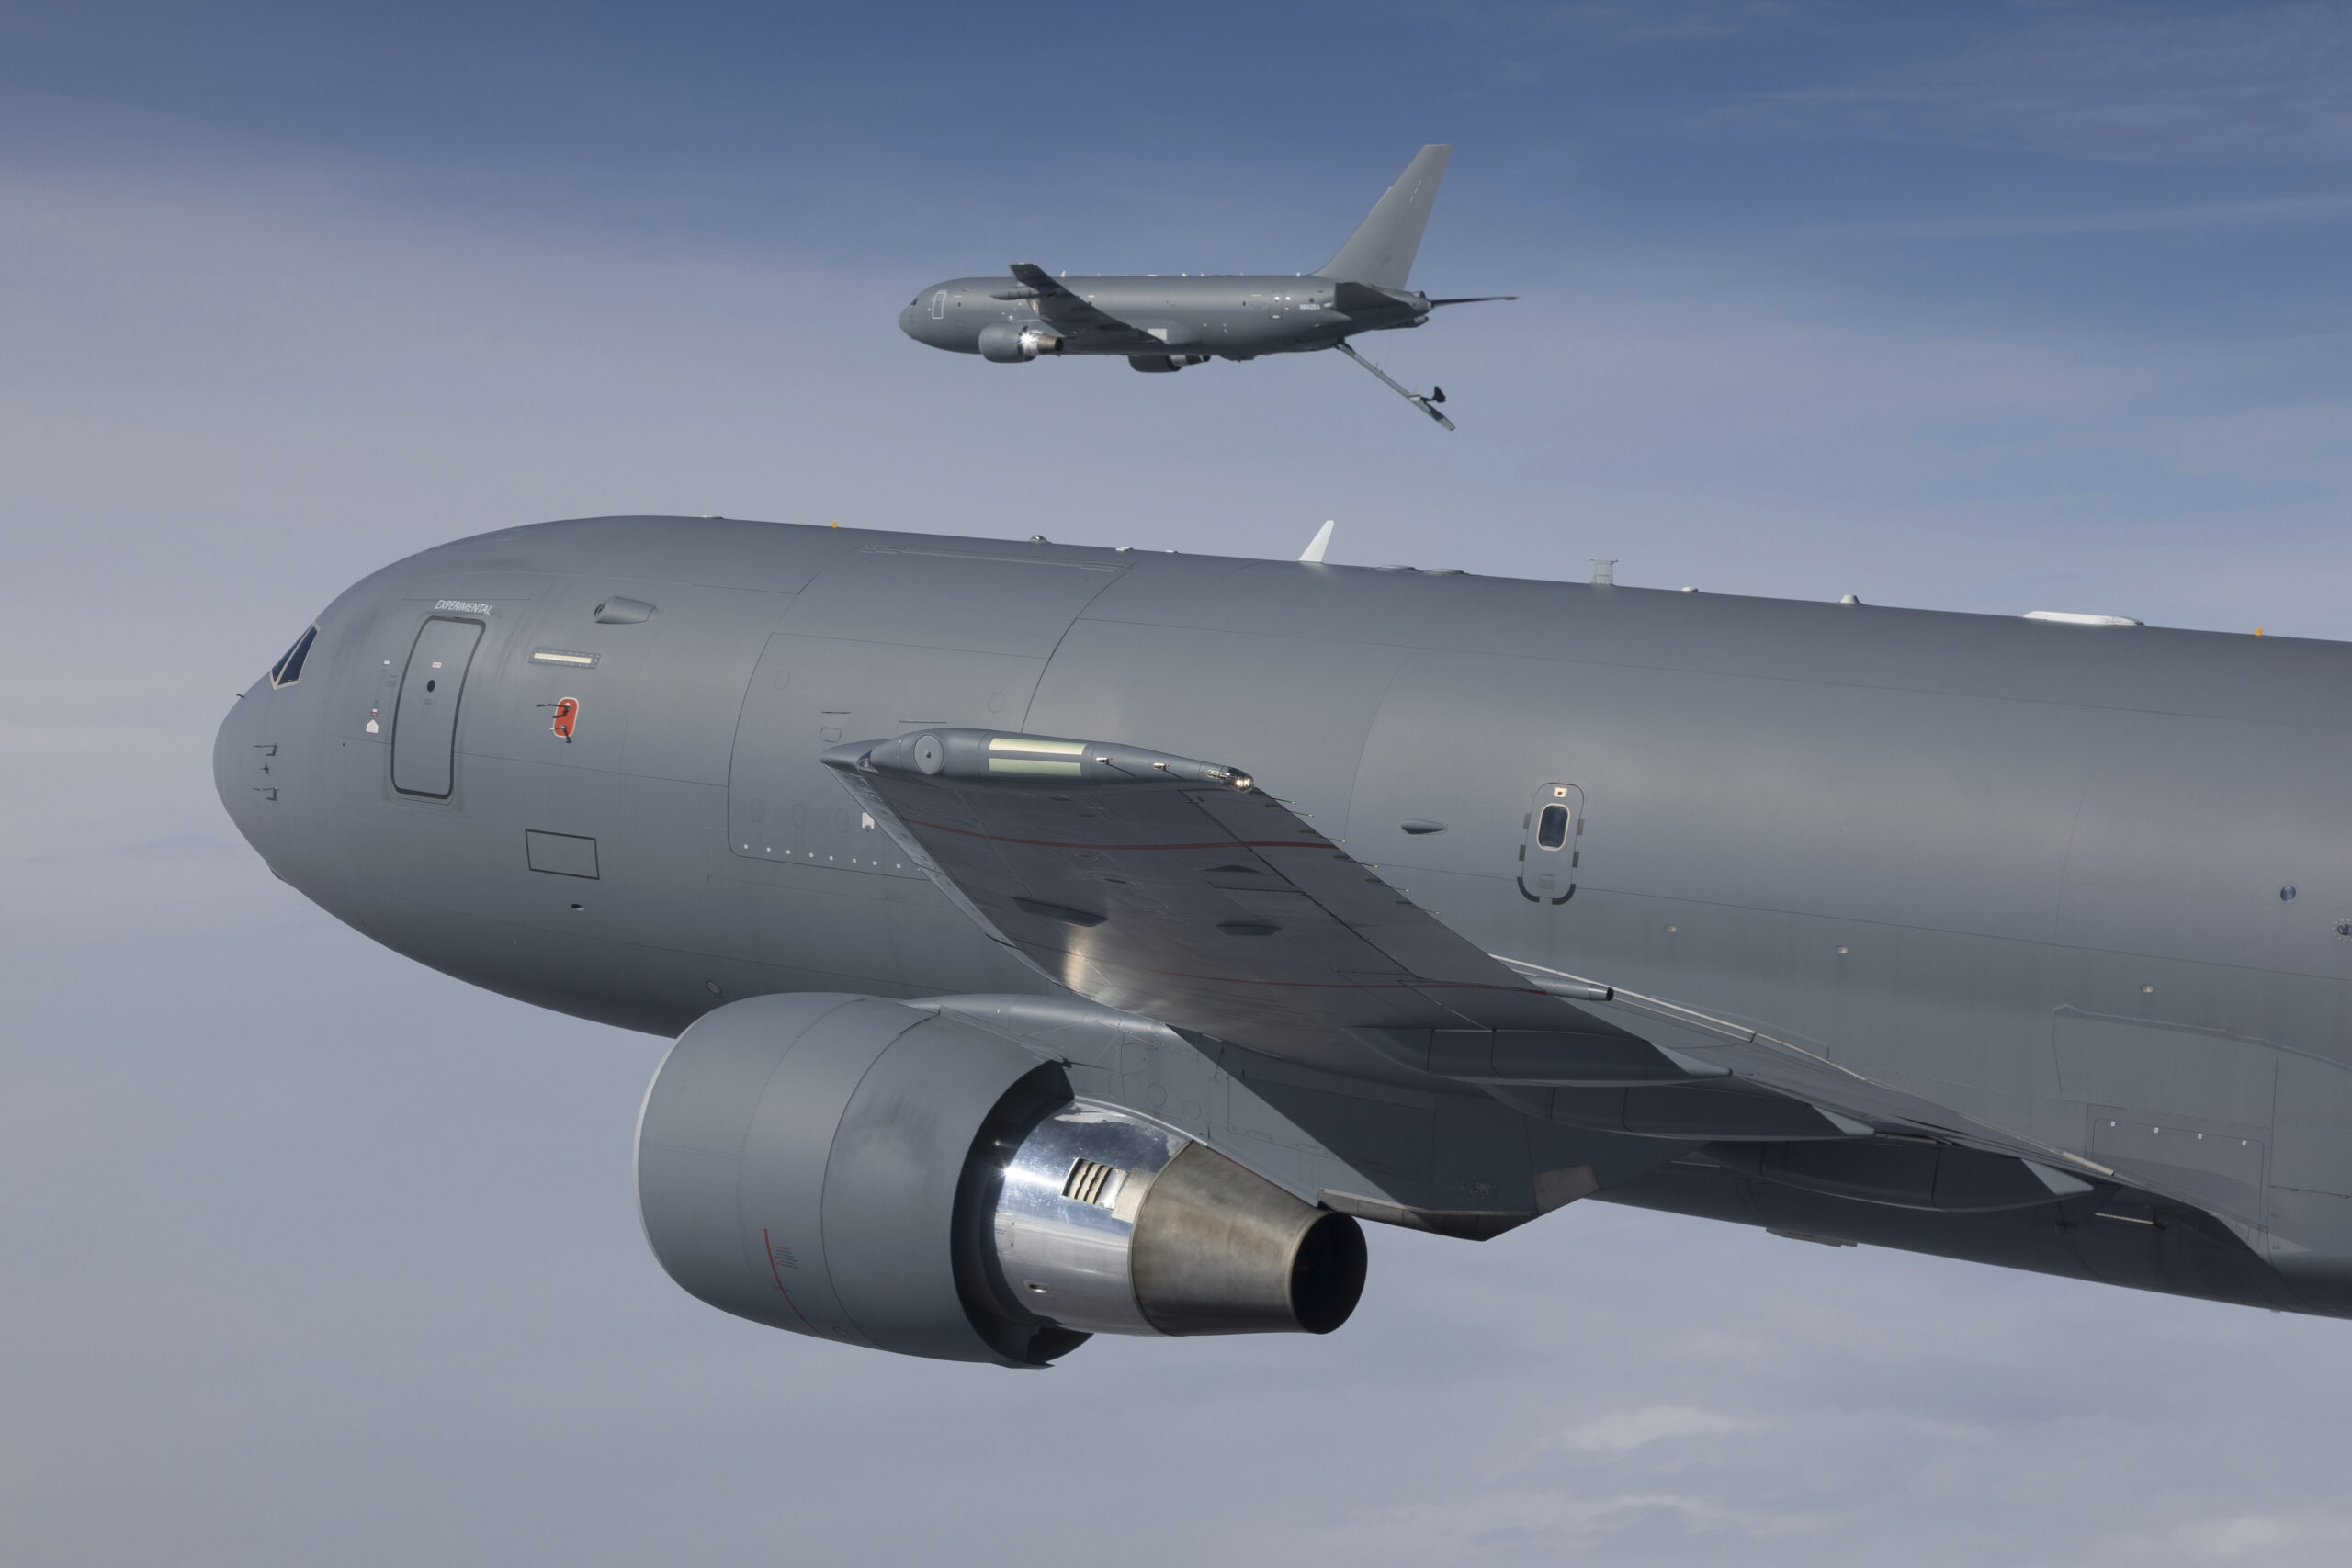 Fact-checking the KC-46A Pegasus